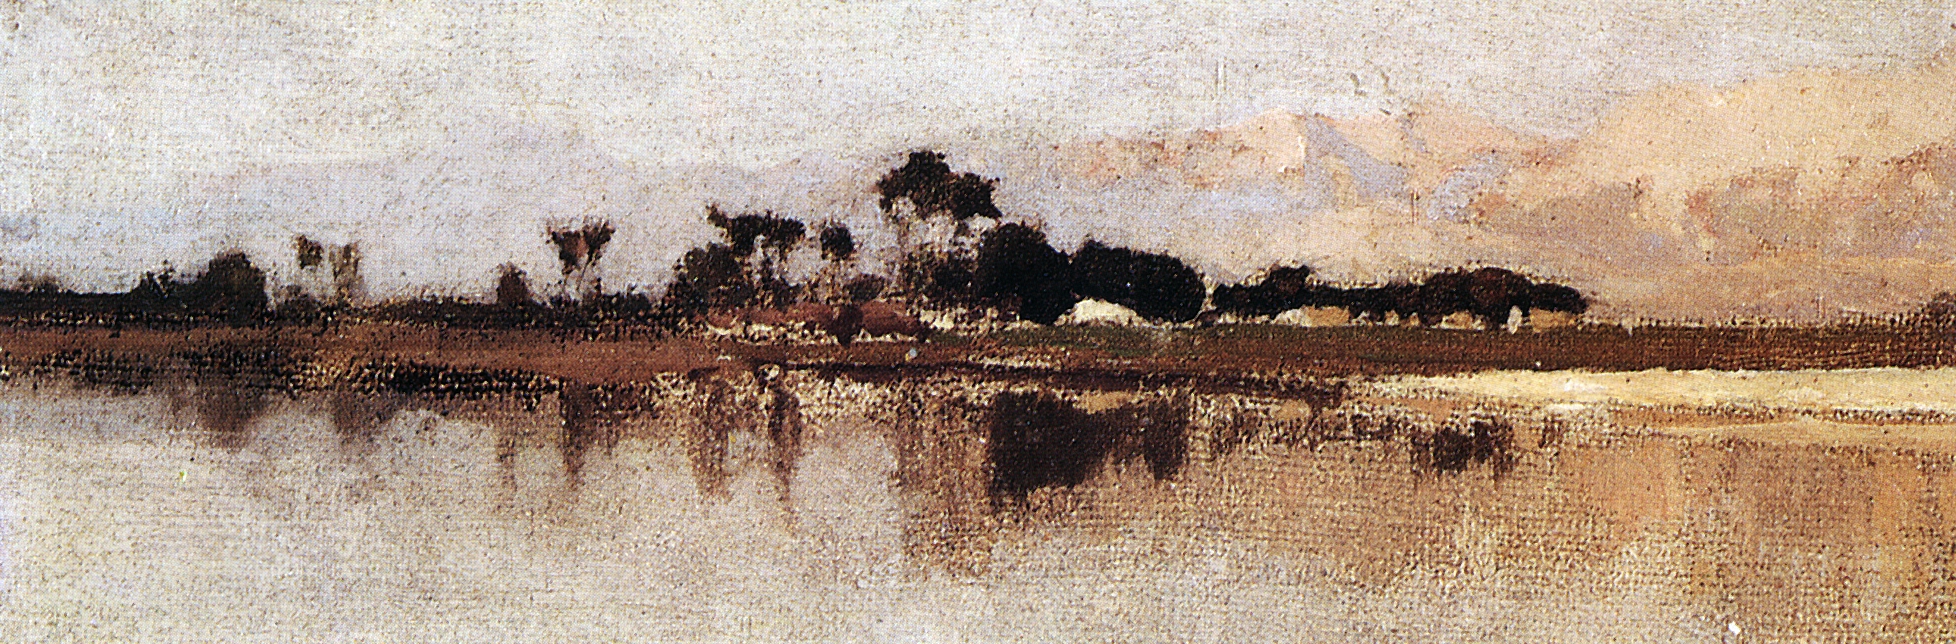 Поленов. Нил близ Карнака. 1881